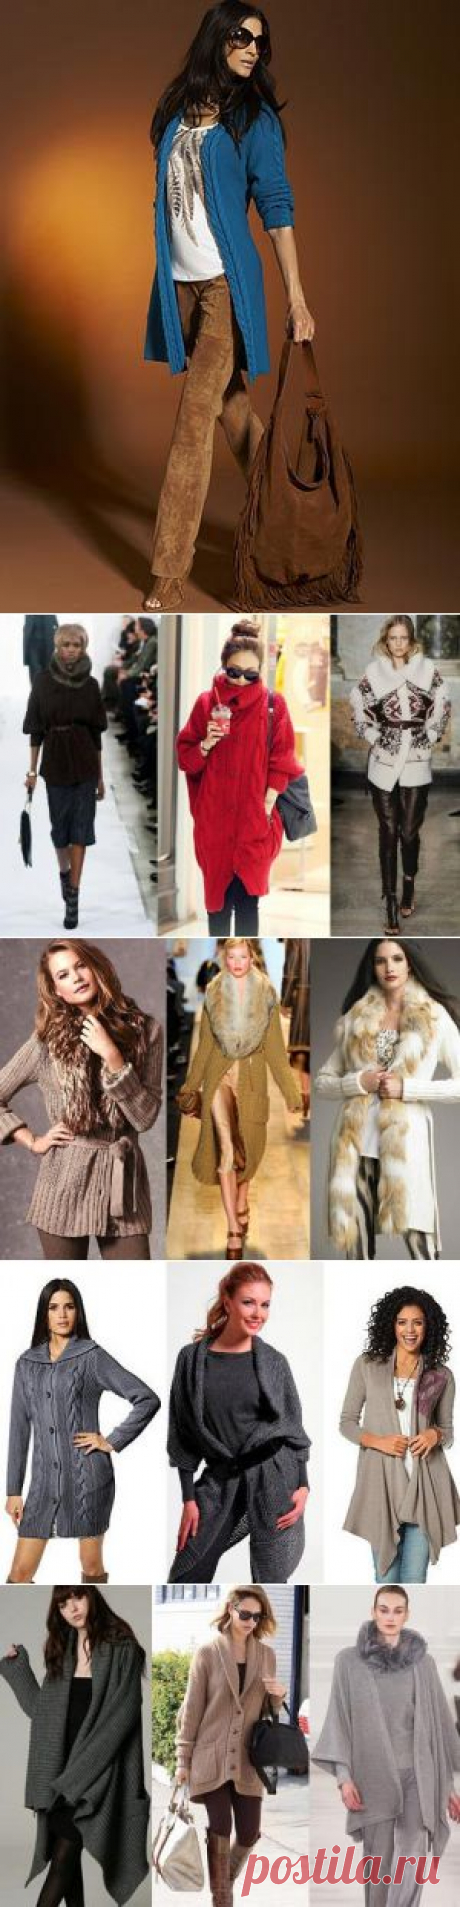 Кардиган – пальто или кофта? Модные осенние образы с кардиганом / Все для женщины